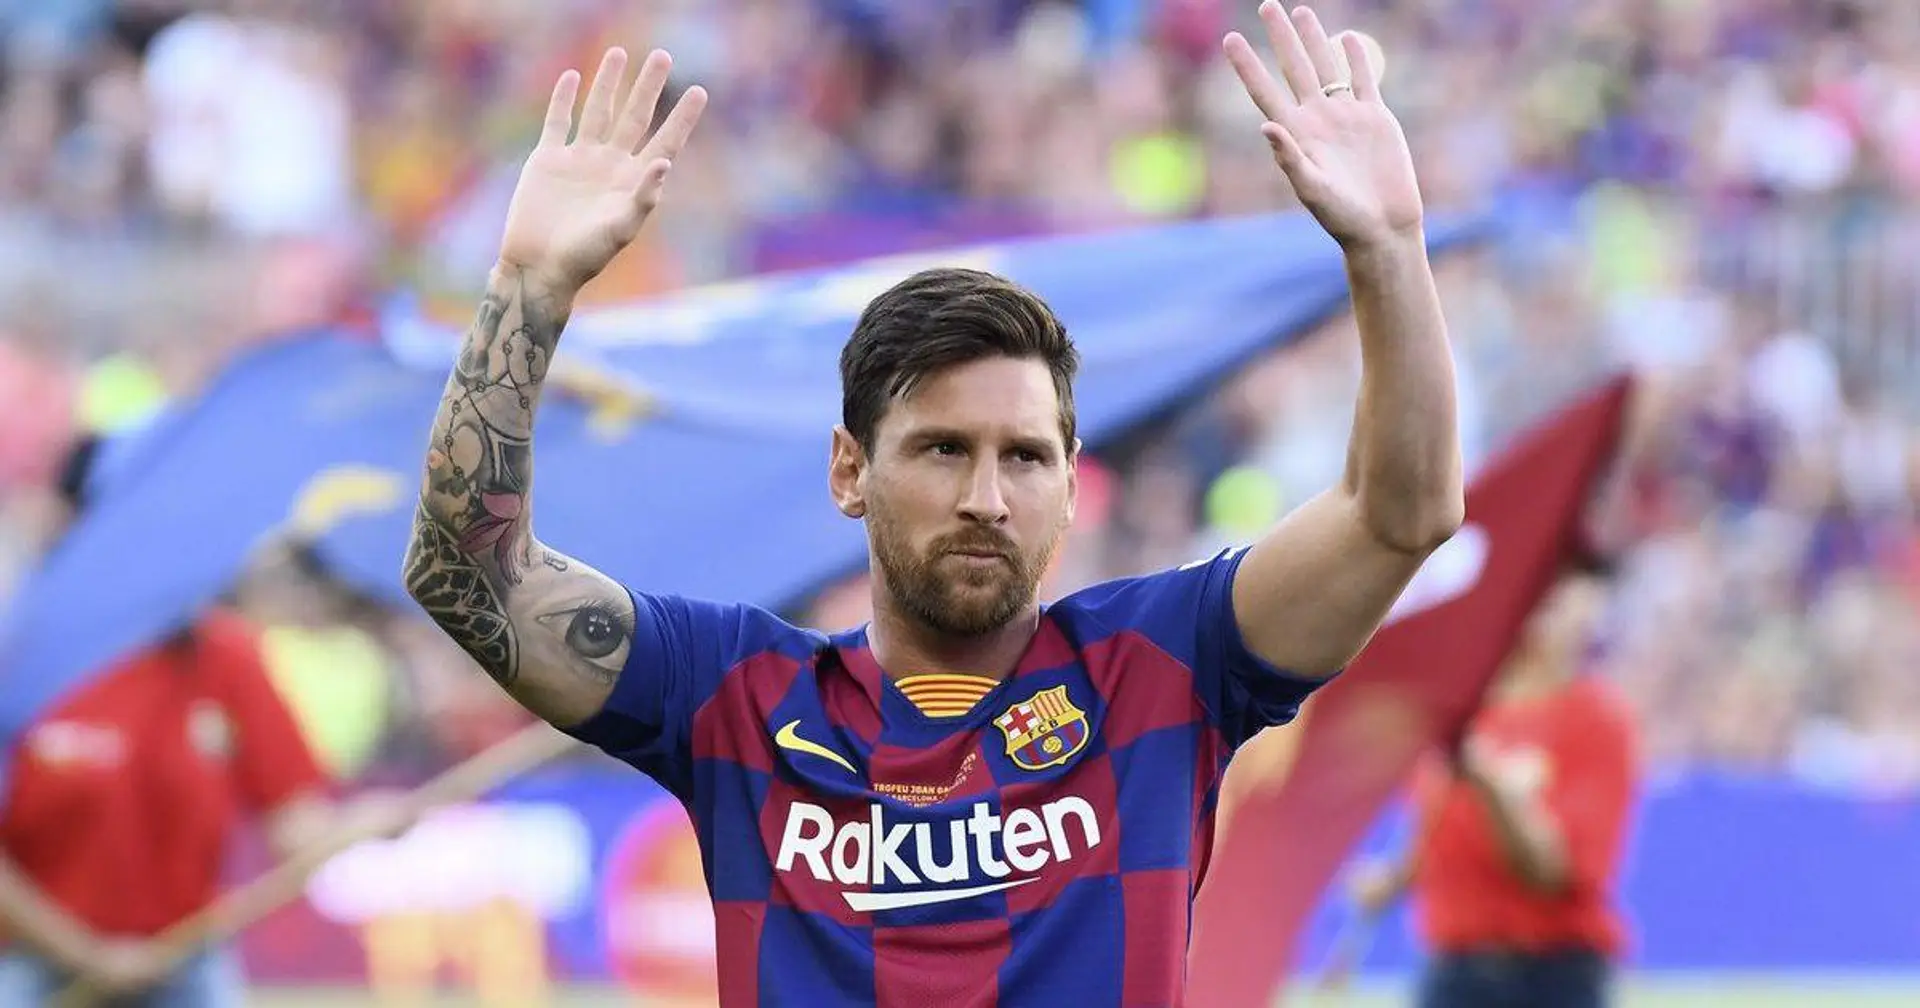 L'ancien coéquipier argentin de Messi, Gago, laisse entendre que les Newell's est la seule équipe que Leo pourrait éventuellement rejoindre s'il quittait le Barça